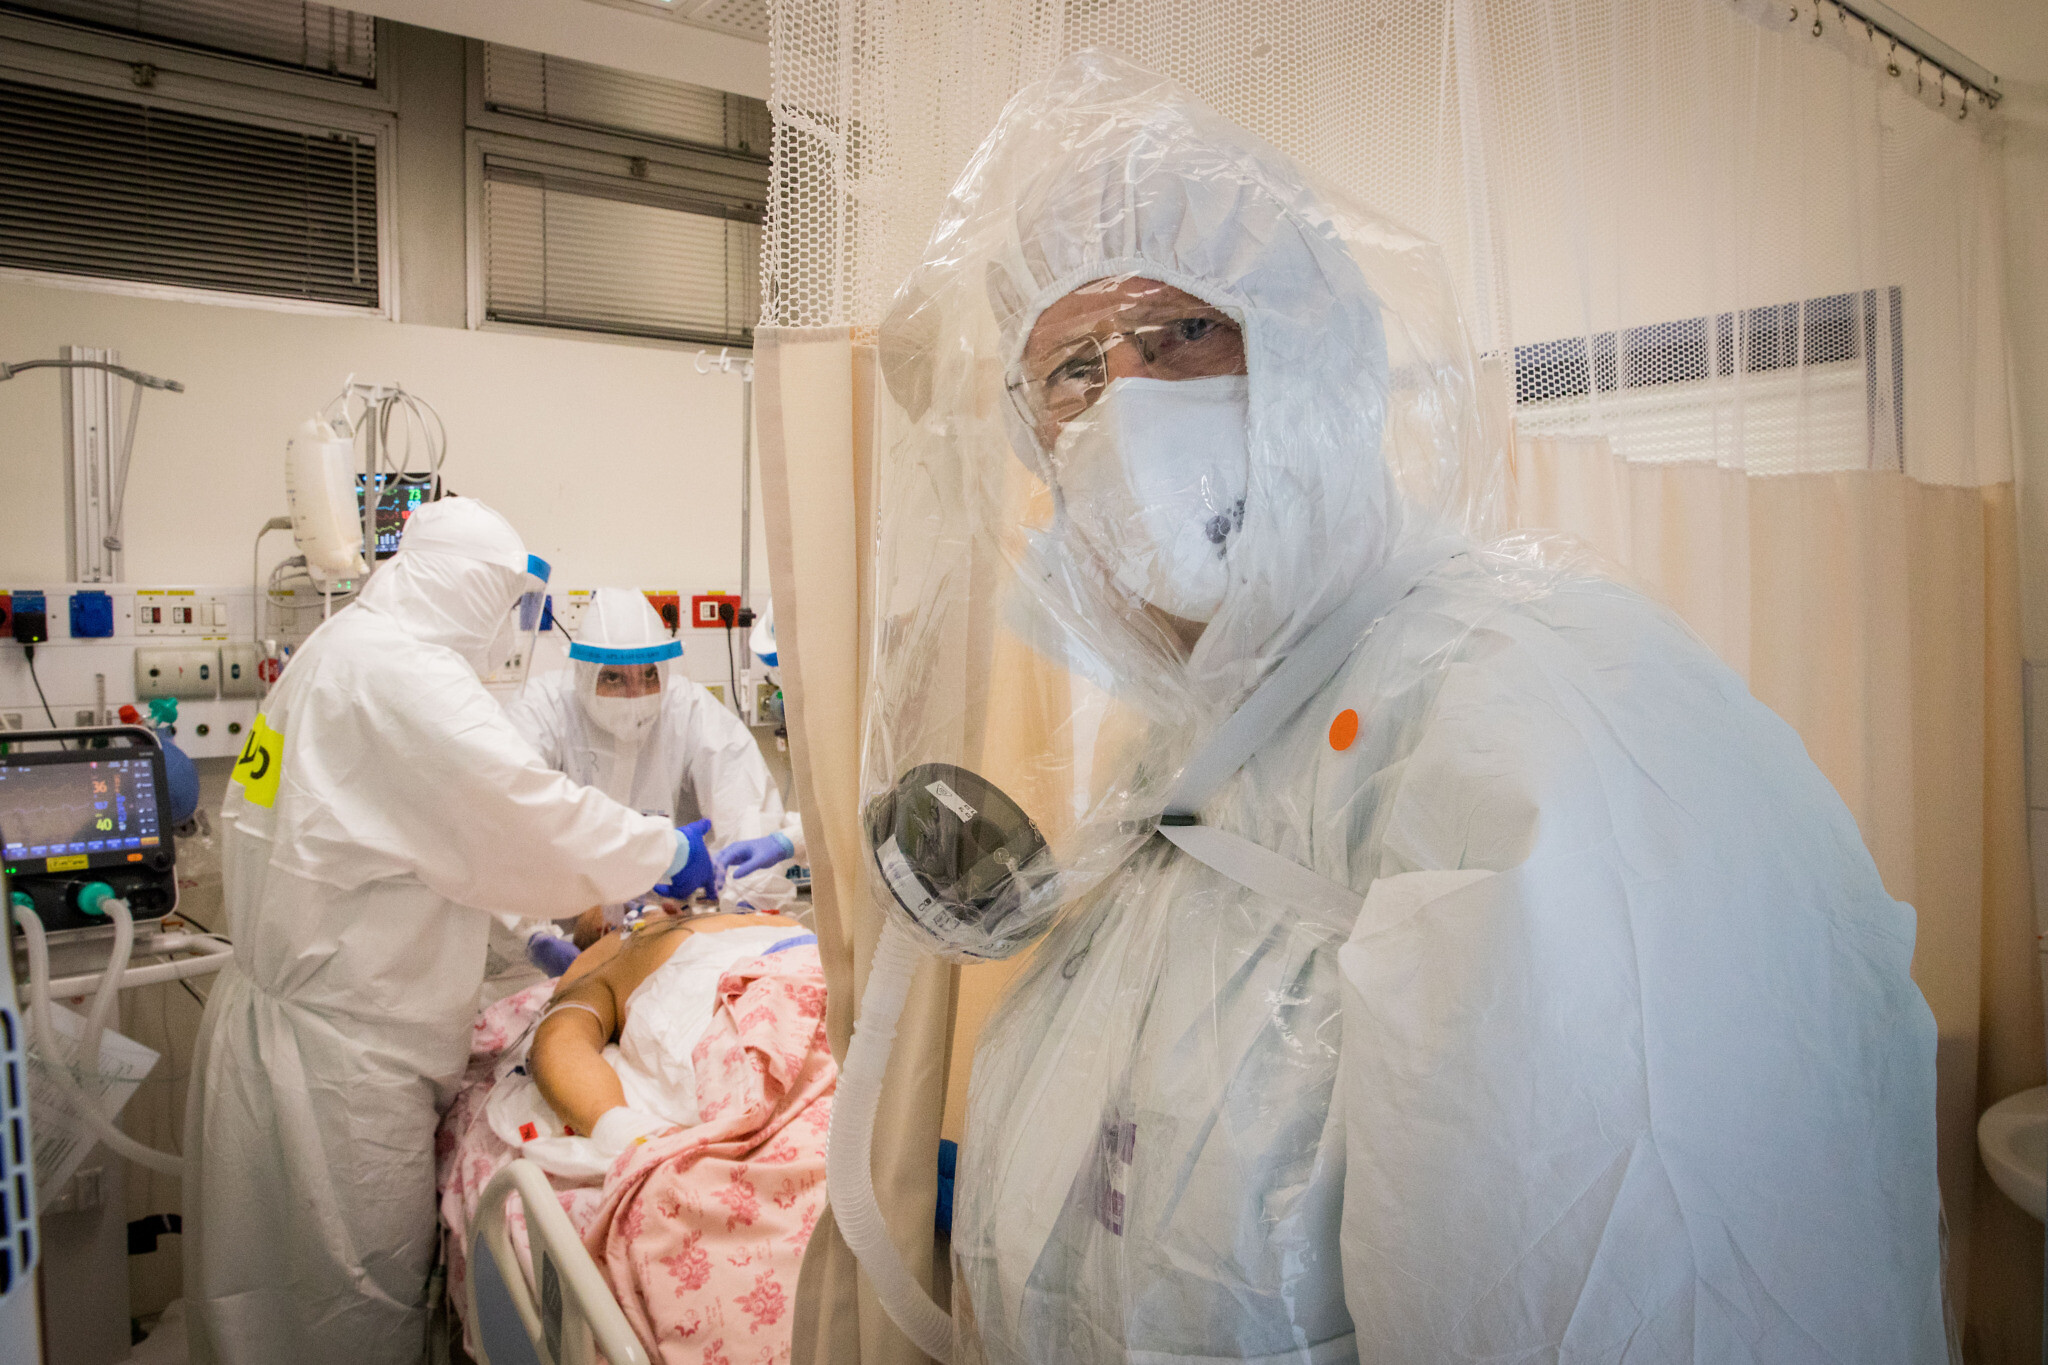 Des membres de l'équipe hospitalière travaillent dans le service de traitement du coronavirus de l'hôpital Shaare Zedek à Jérusalem, le 23 septembre 2020. (Nati Shohat/Flash90)